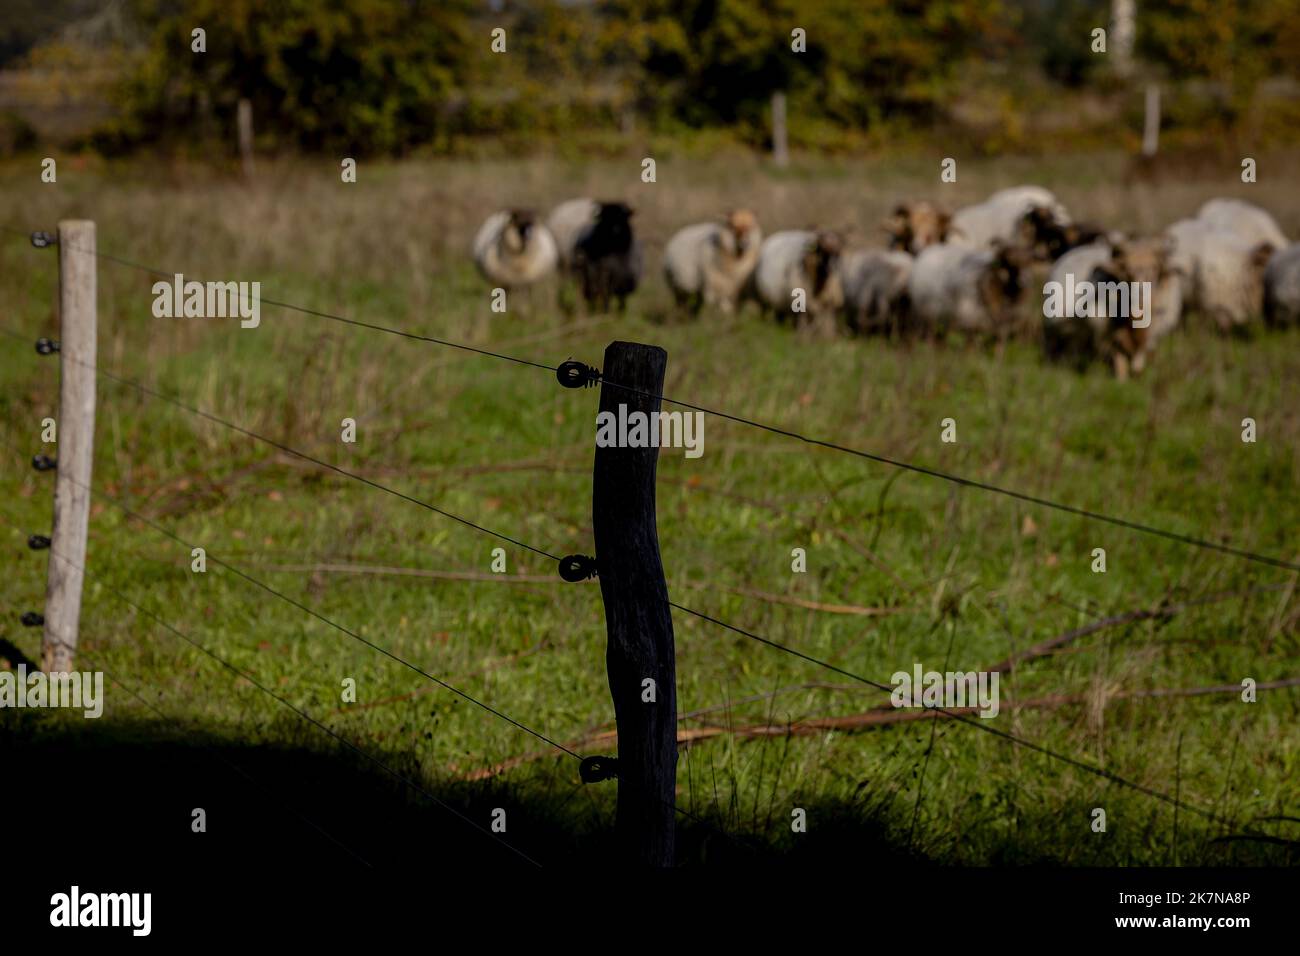 2022-10-18 12:51:45:19 BENNEVELD - recinto a prova di lupo ad un allevatore  di pecore in Drenthe, posto per proteggere le pecore contro il lupo. La  recinzione è costituita da recinzioni elettriche, per